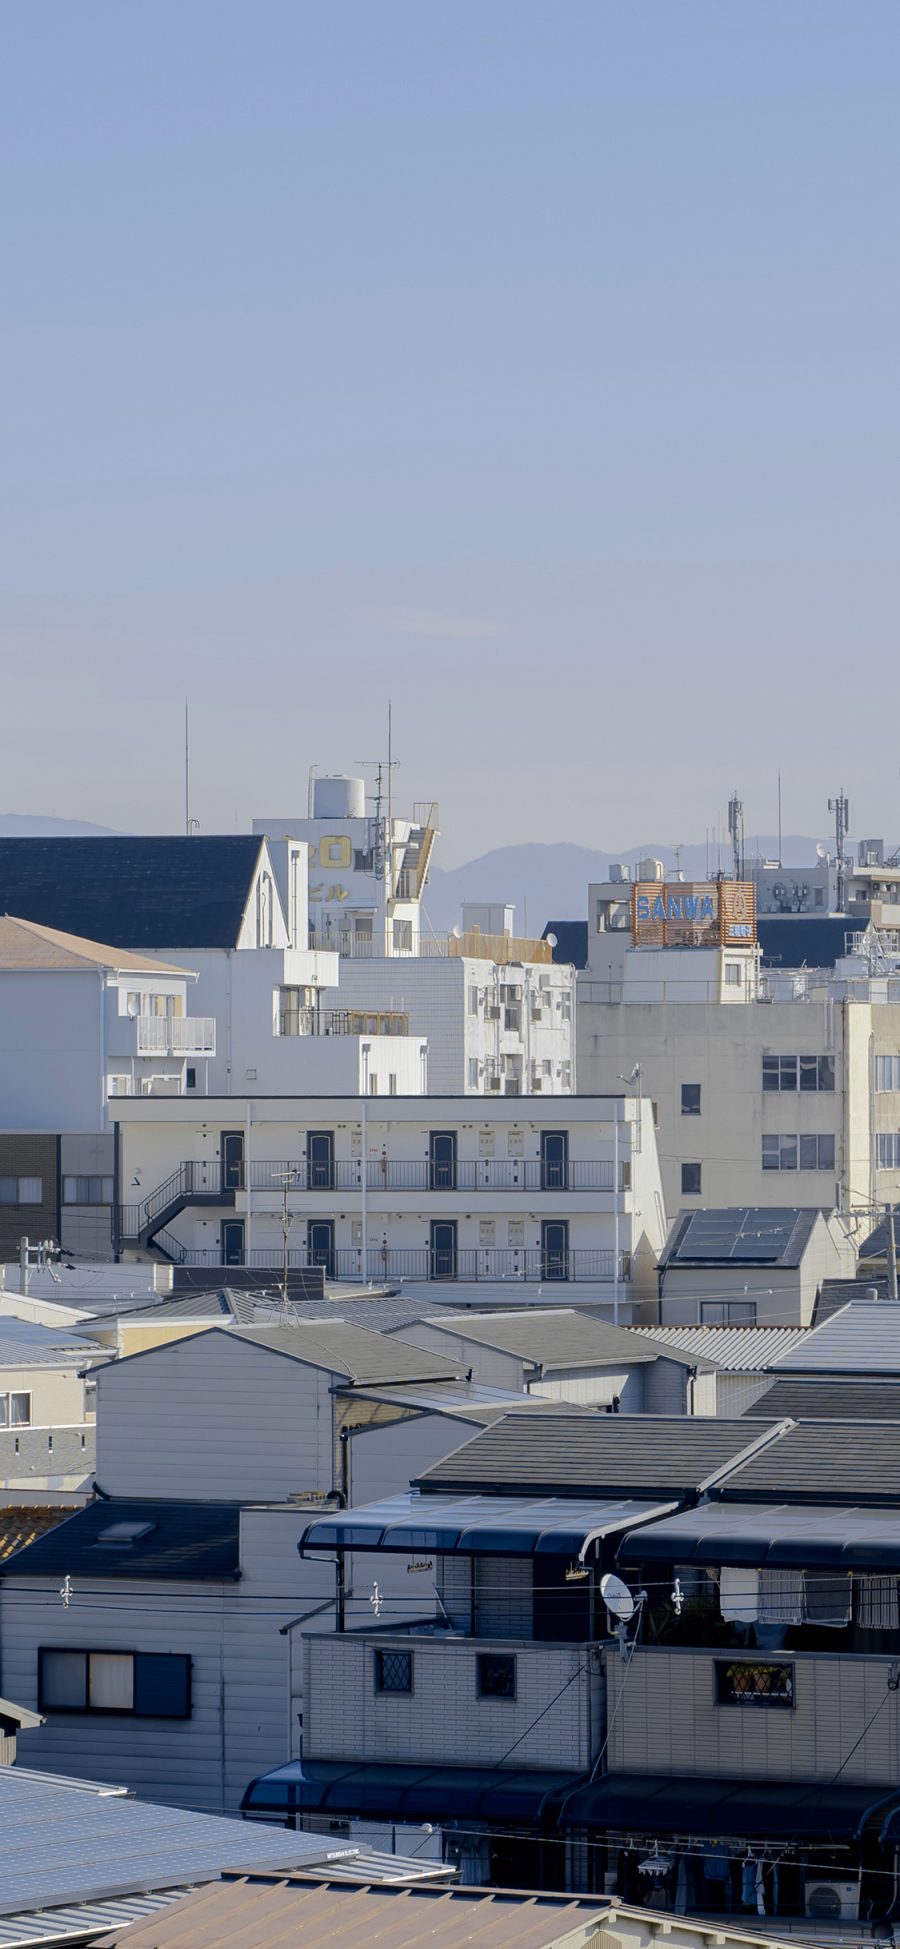 [2436×1125]房屋 城市 日本 屋顶 苹果手机壁纸图片